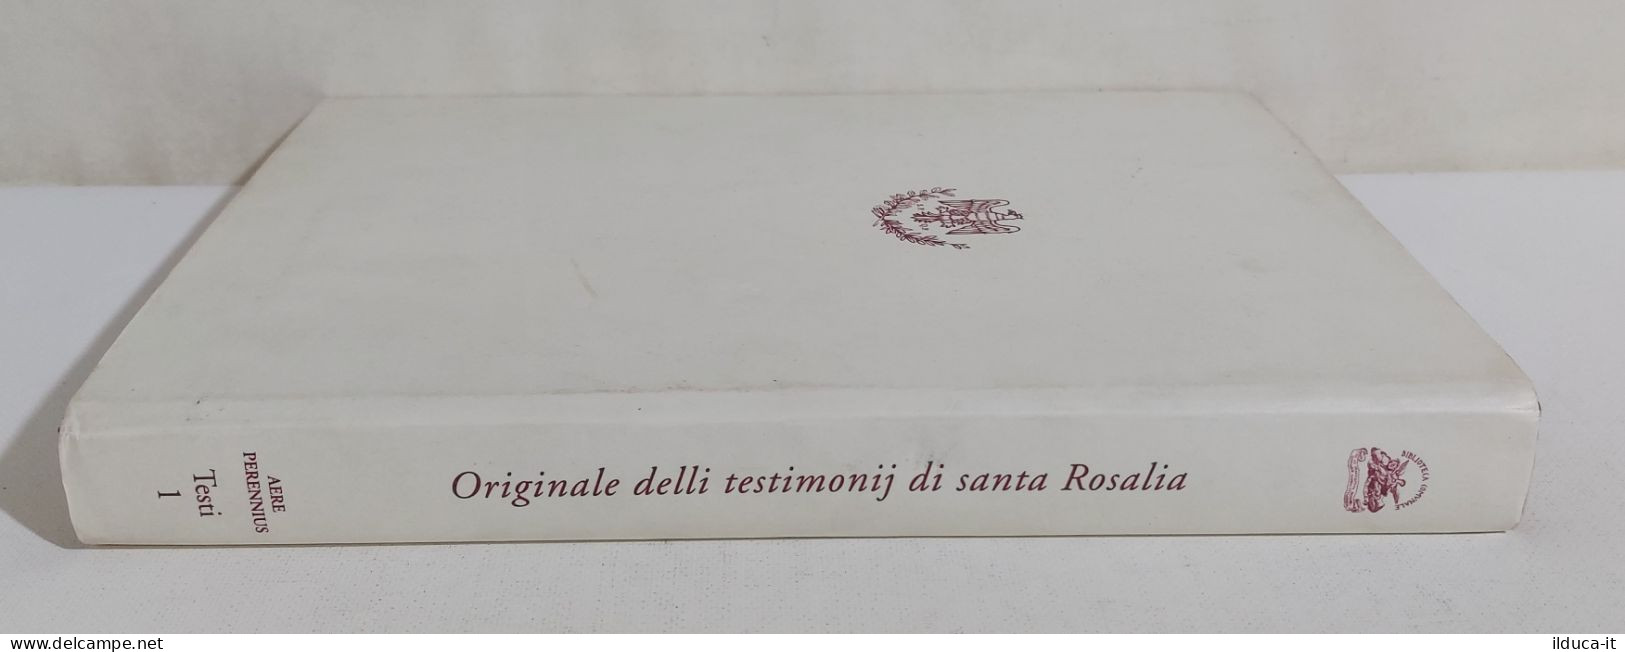 I108936 V Originale Delli Testimonij Di Santa Rosalia - Palermo 1977 - Religione